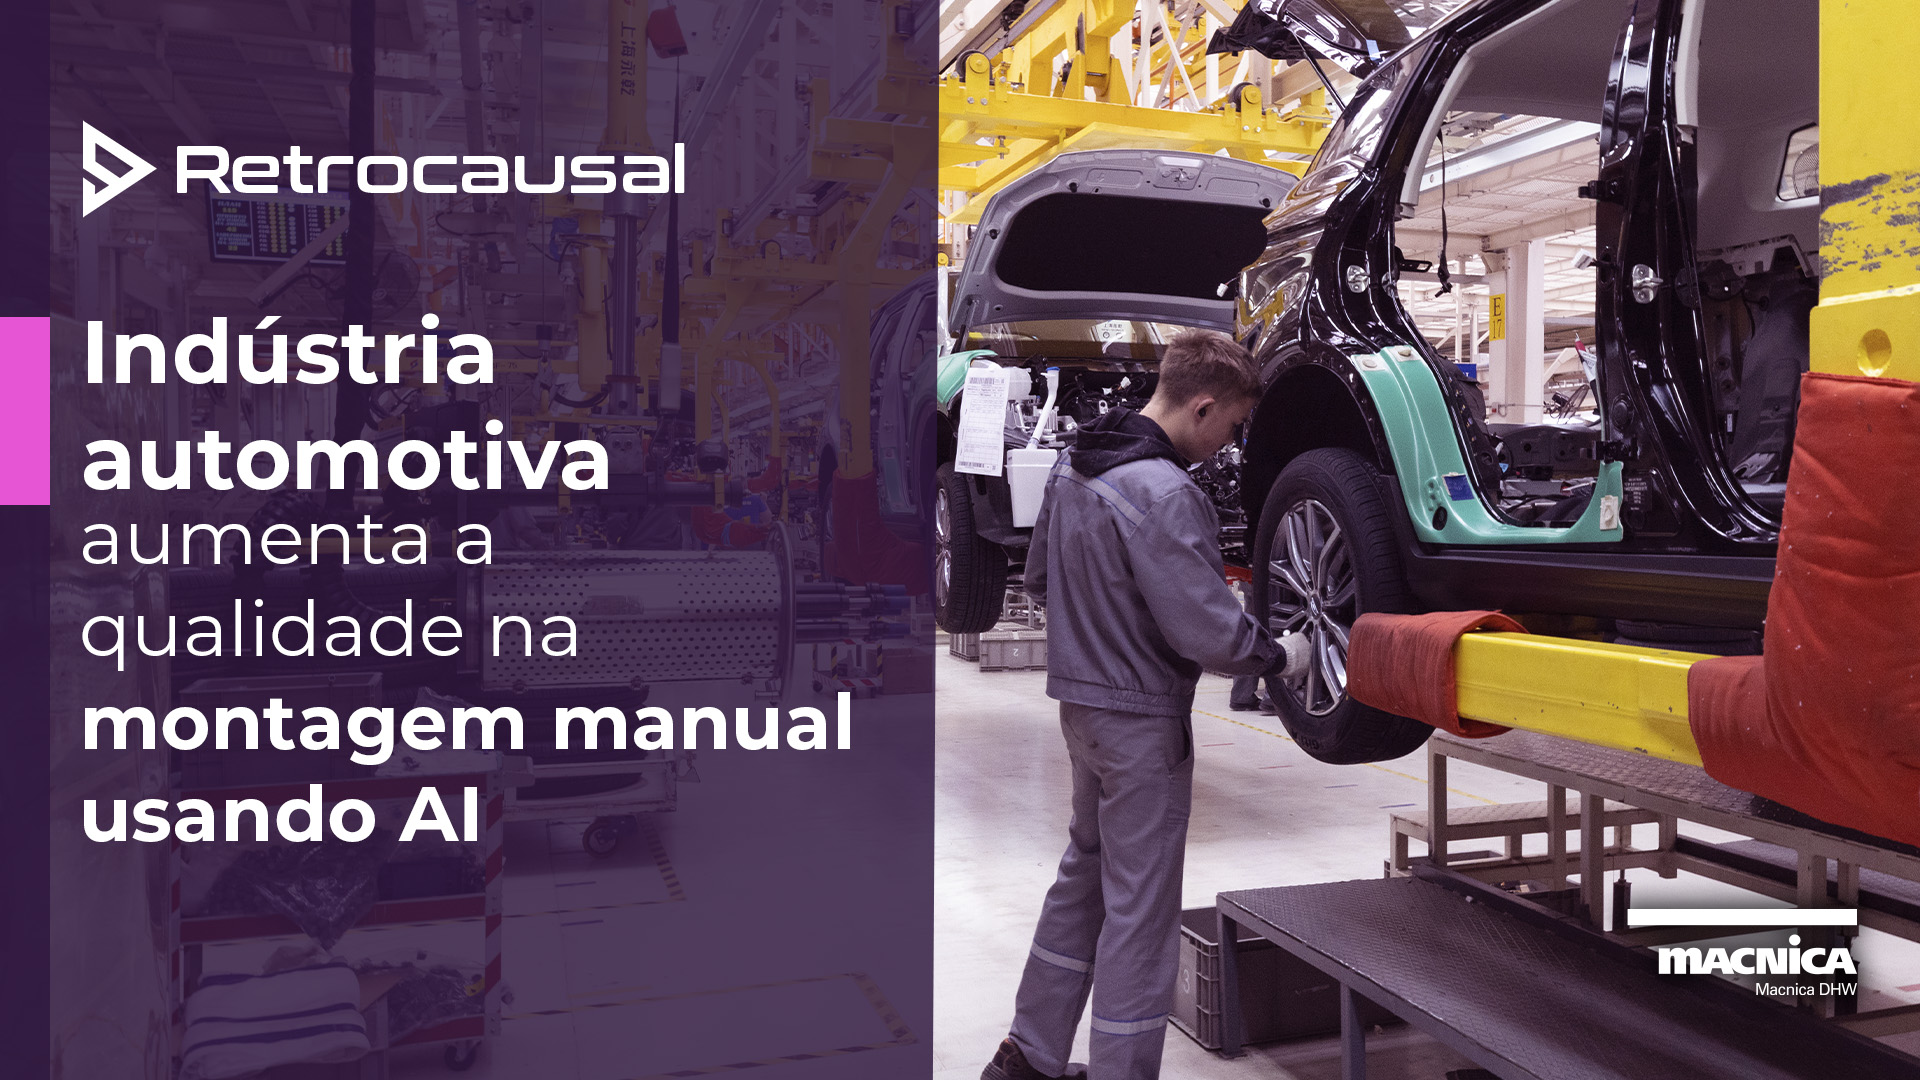 Você está visualizando atualmente Indústria automotiva aumenta a qualidade na montagem manual usando AI